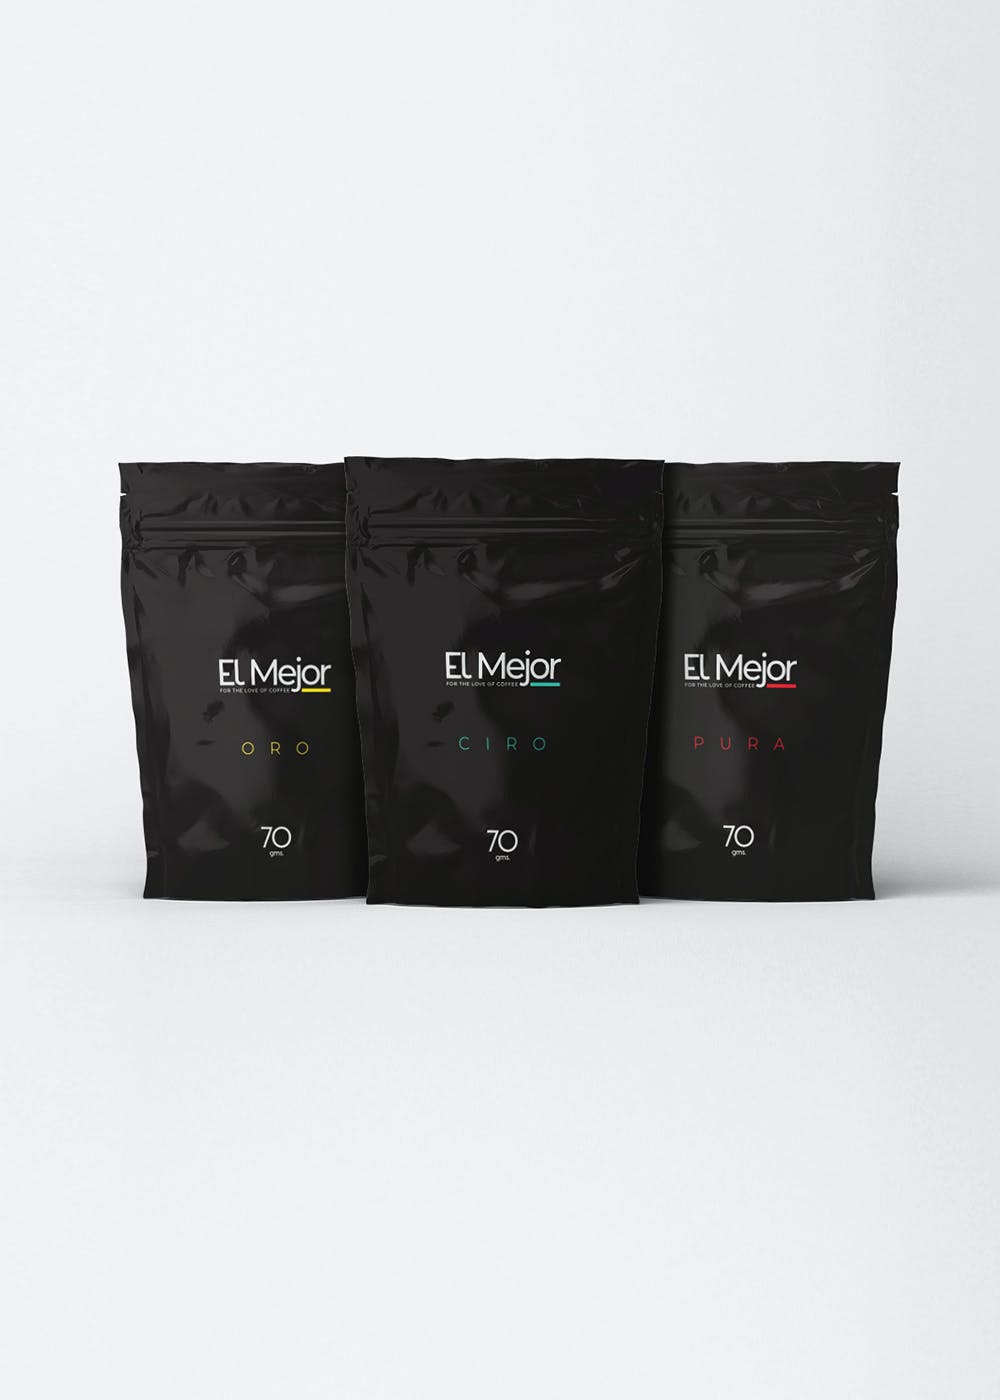 Sample Coffee Pack - Pack of 3 - 70gm Each